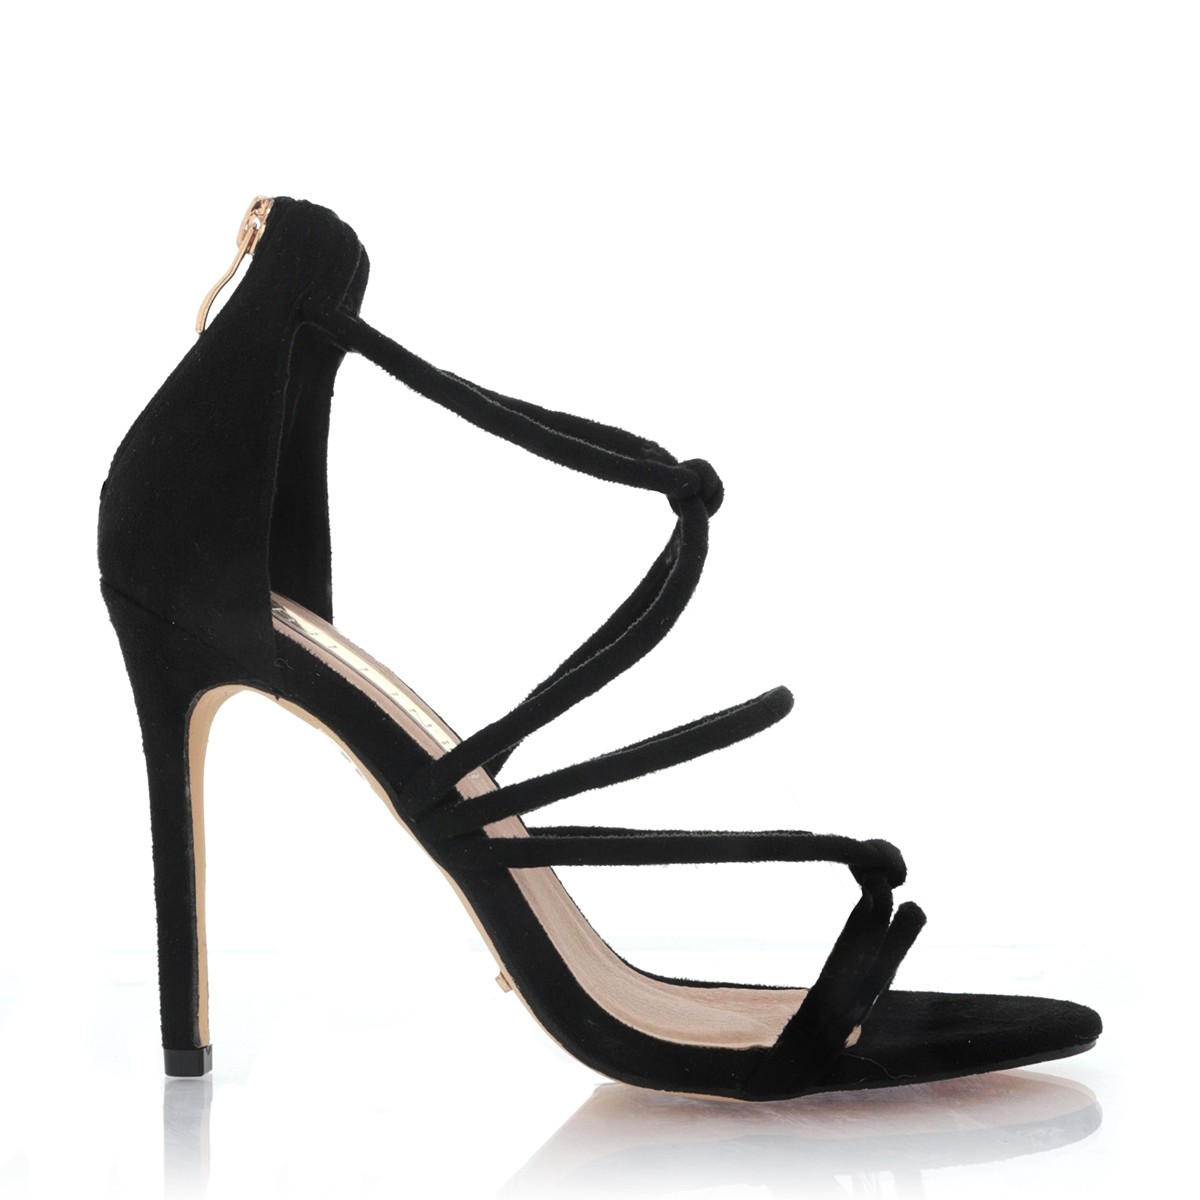 Lassi Black Suede by Billini Shoes on Sale | ShoeSales